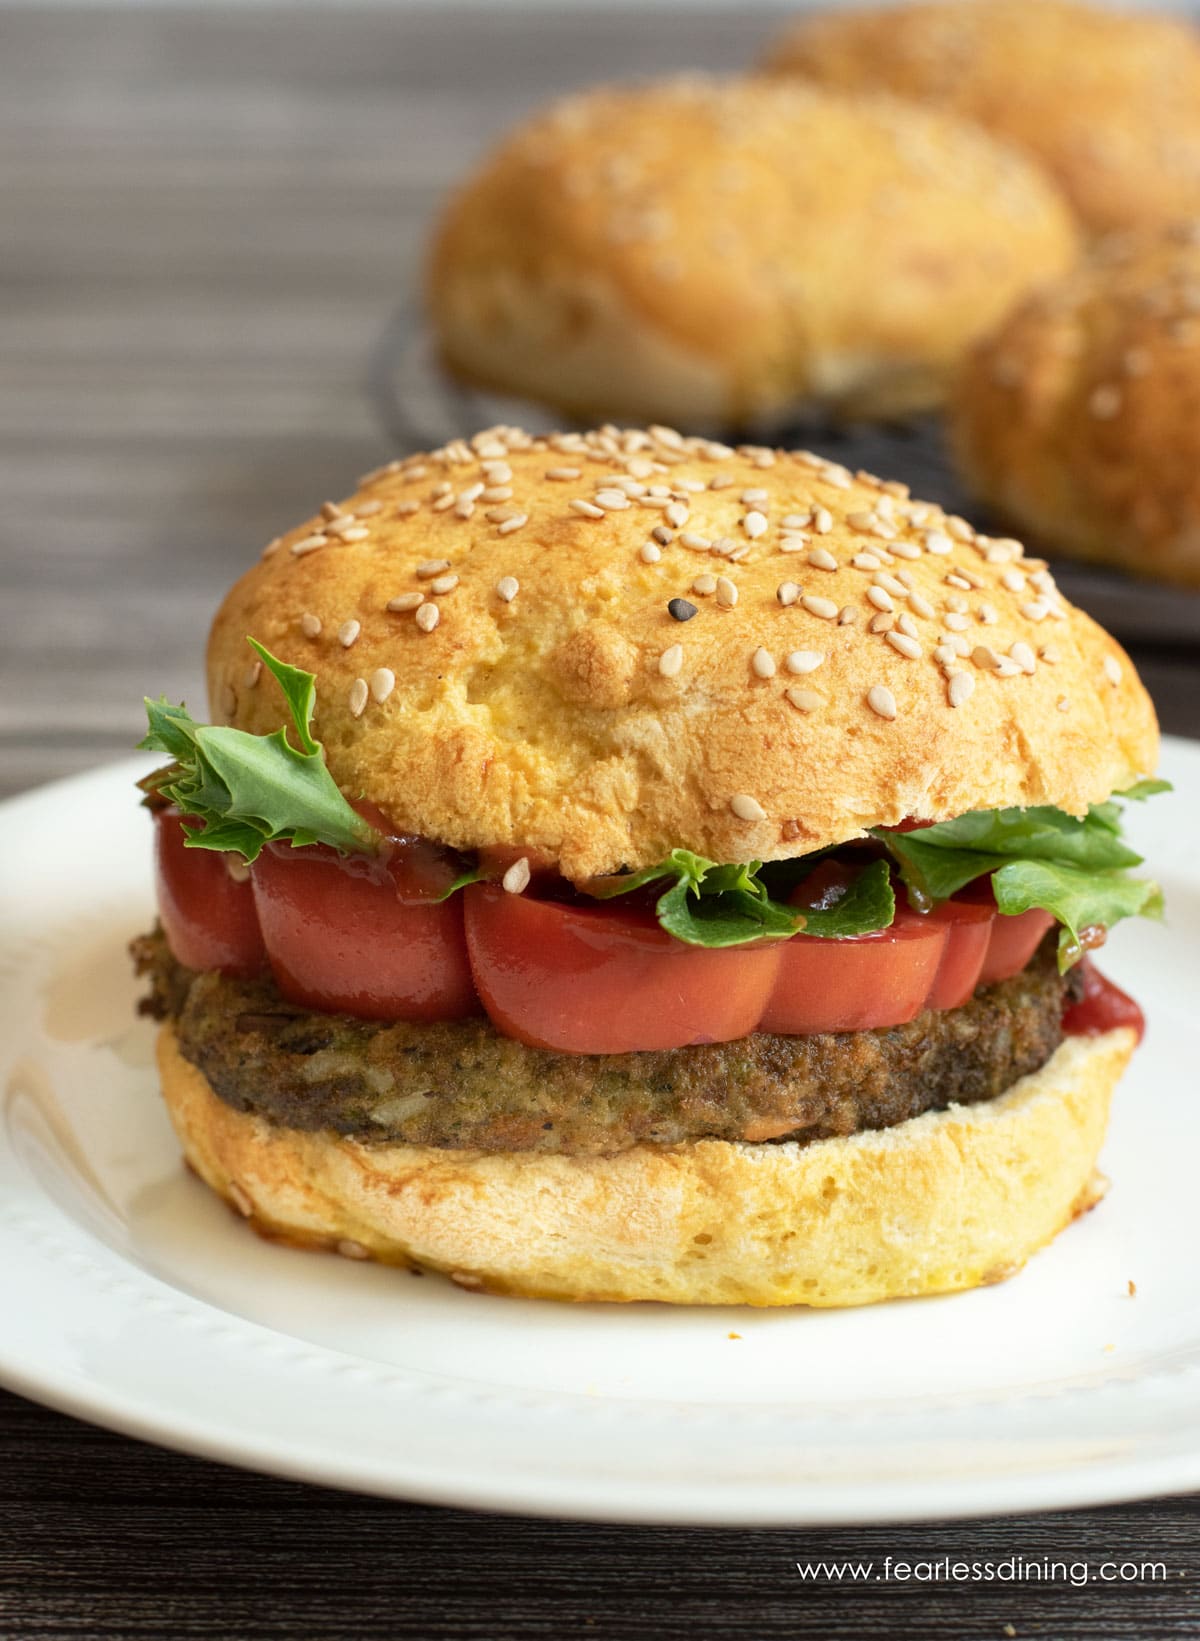 A vegan burger on a homemade gluten free bun.